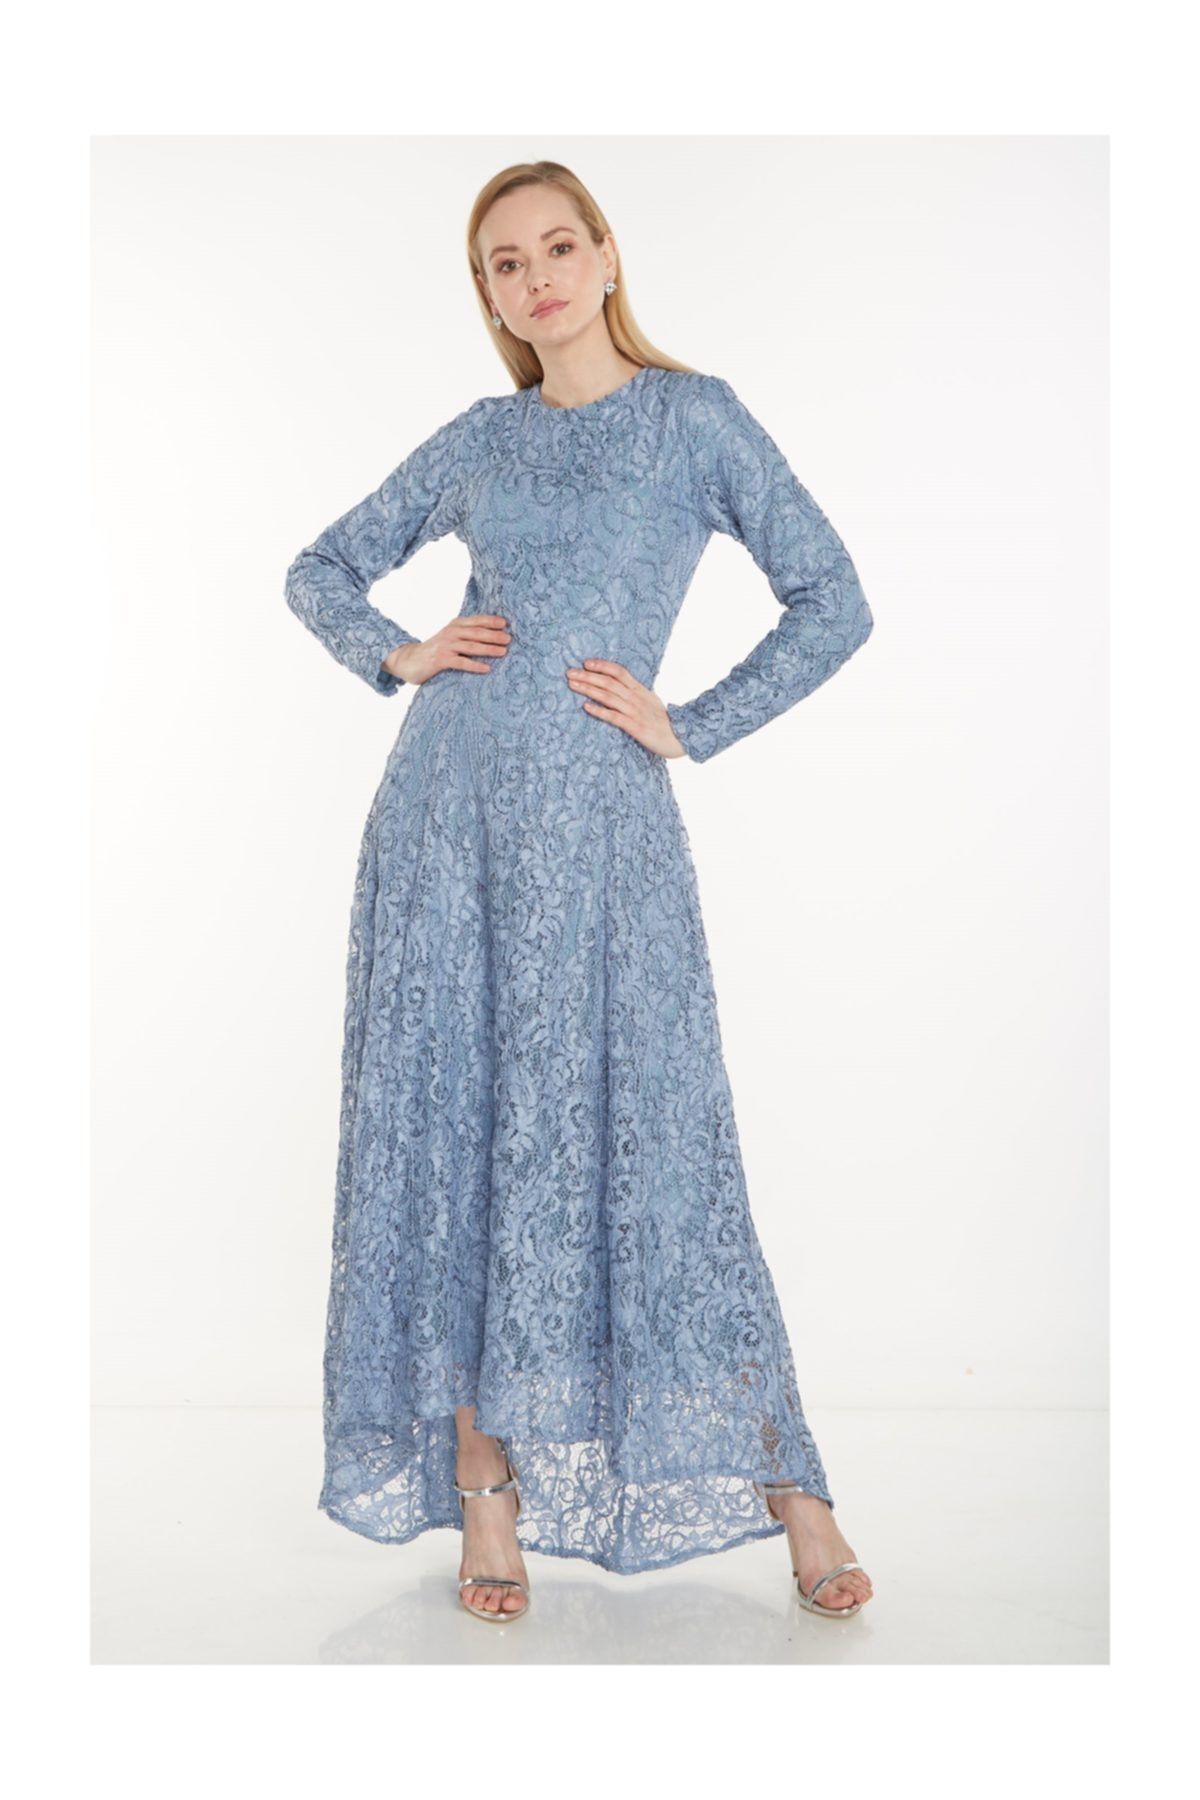 Puane Kadın Mavi Elbise 12042-70